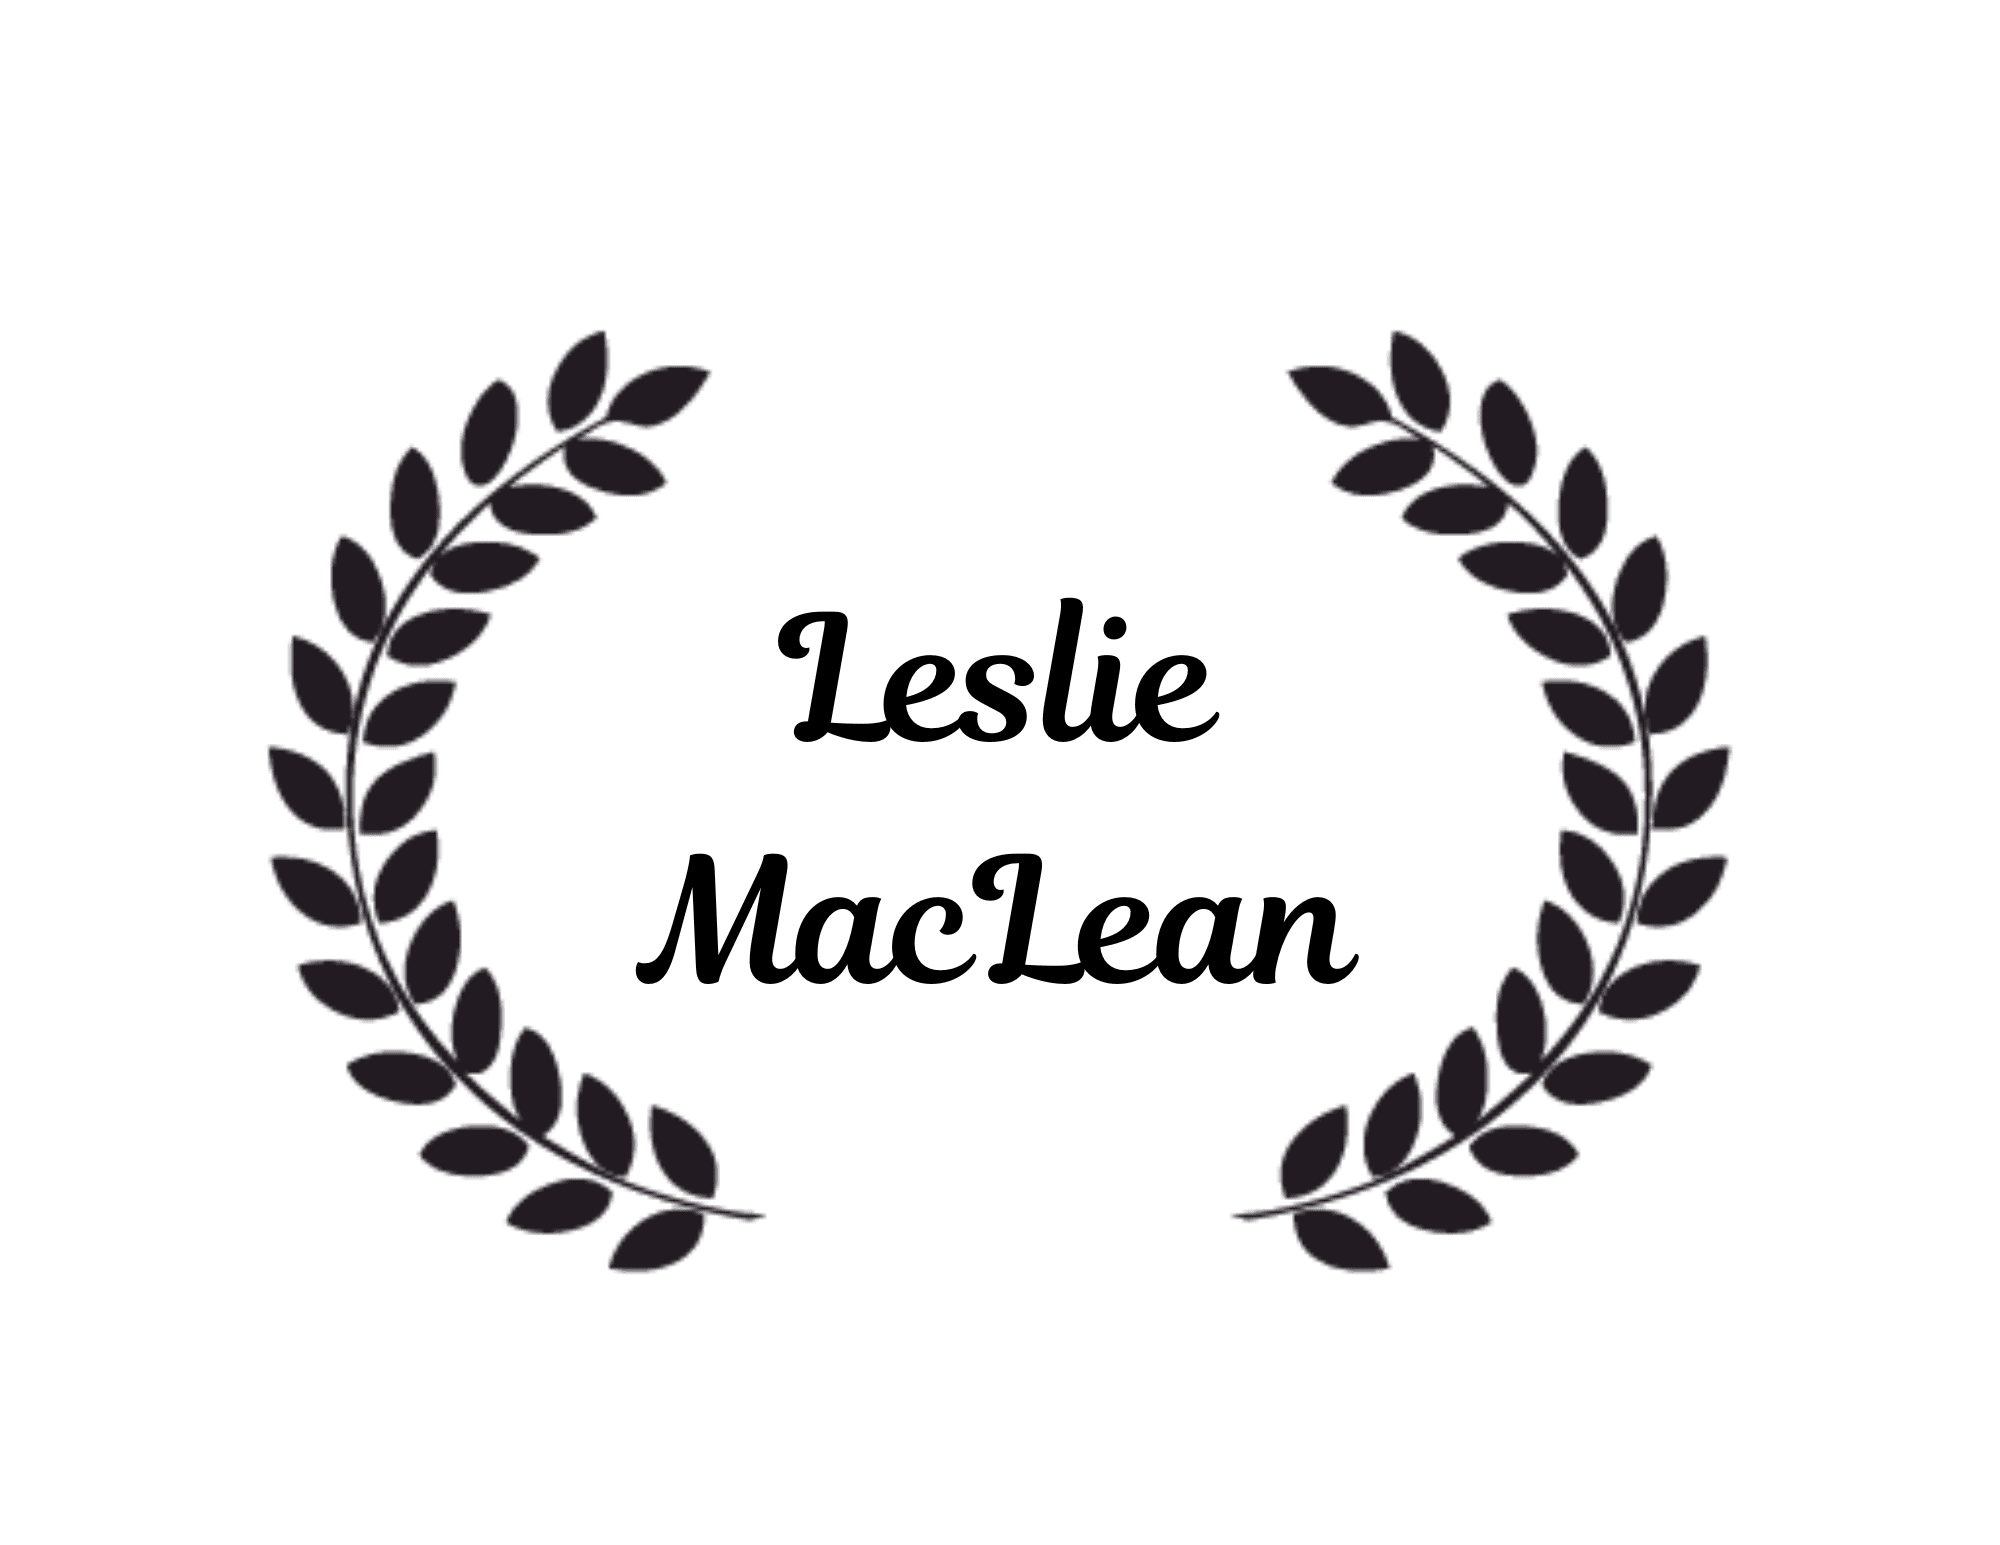 Leslie MacLean